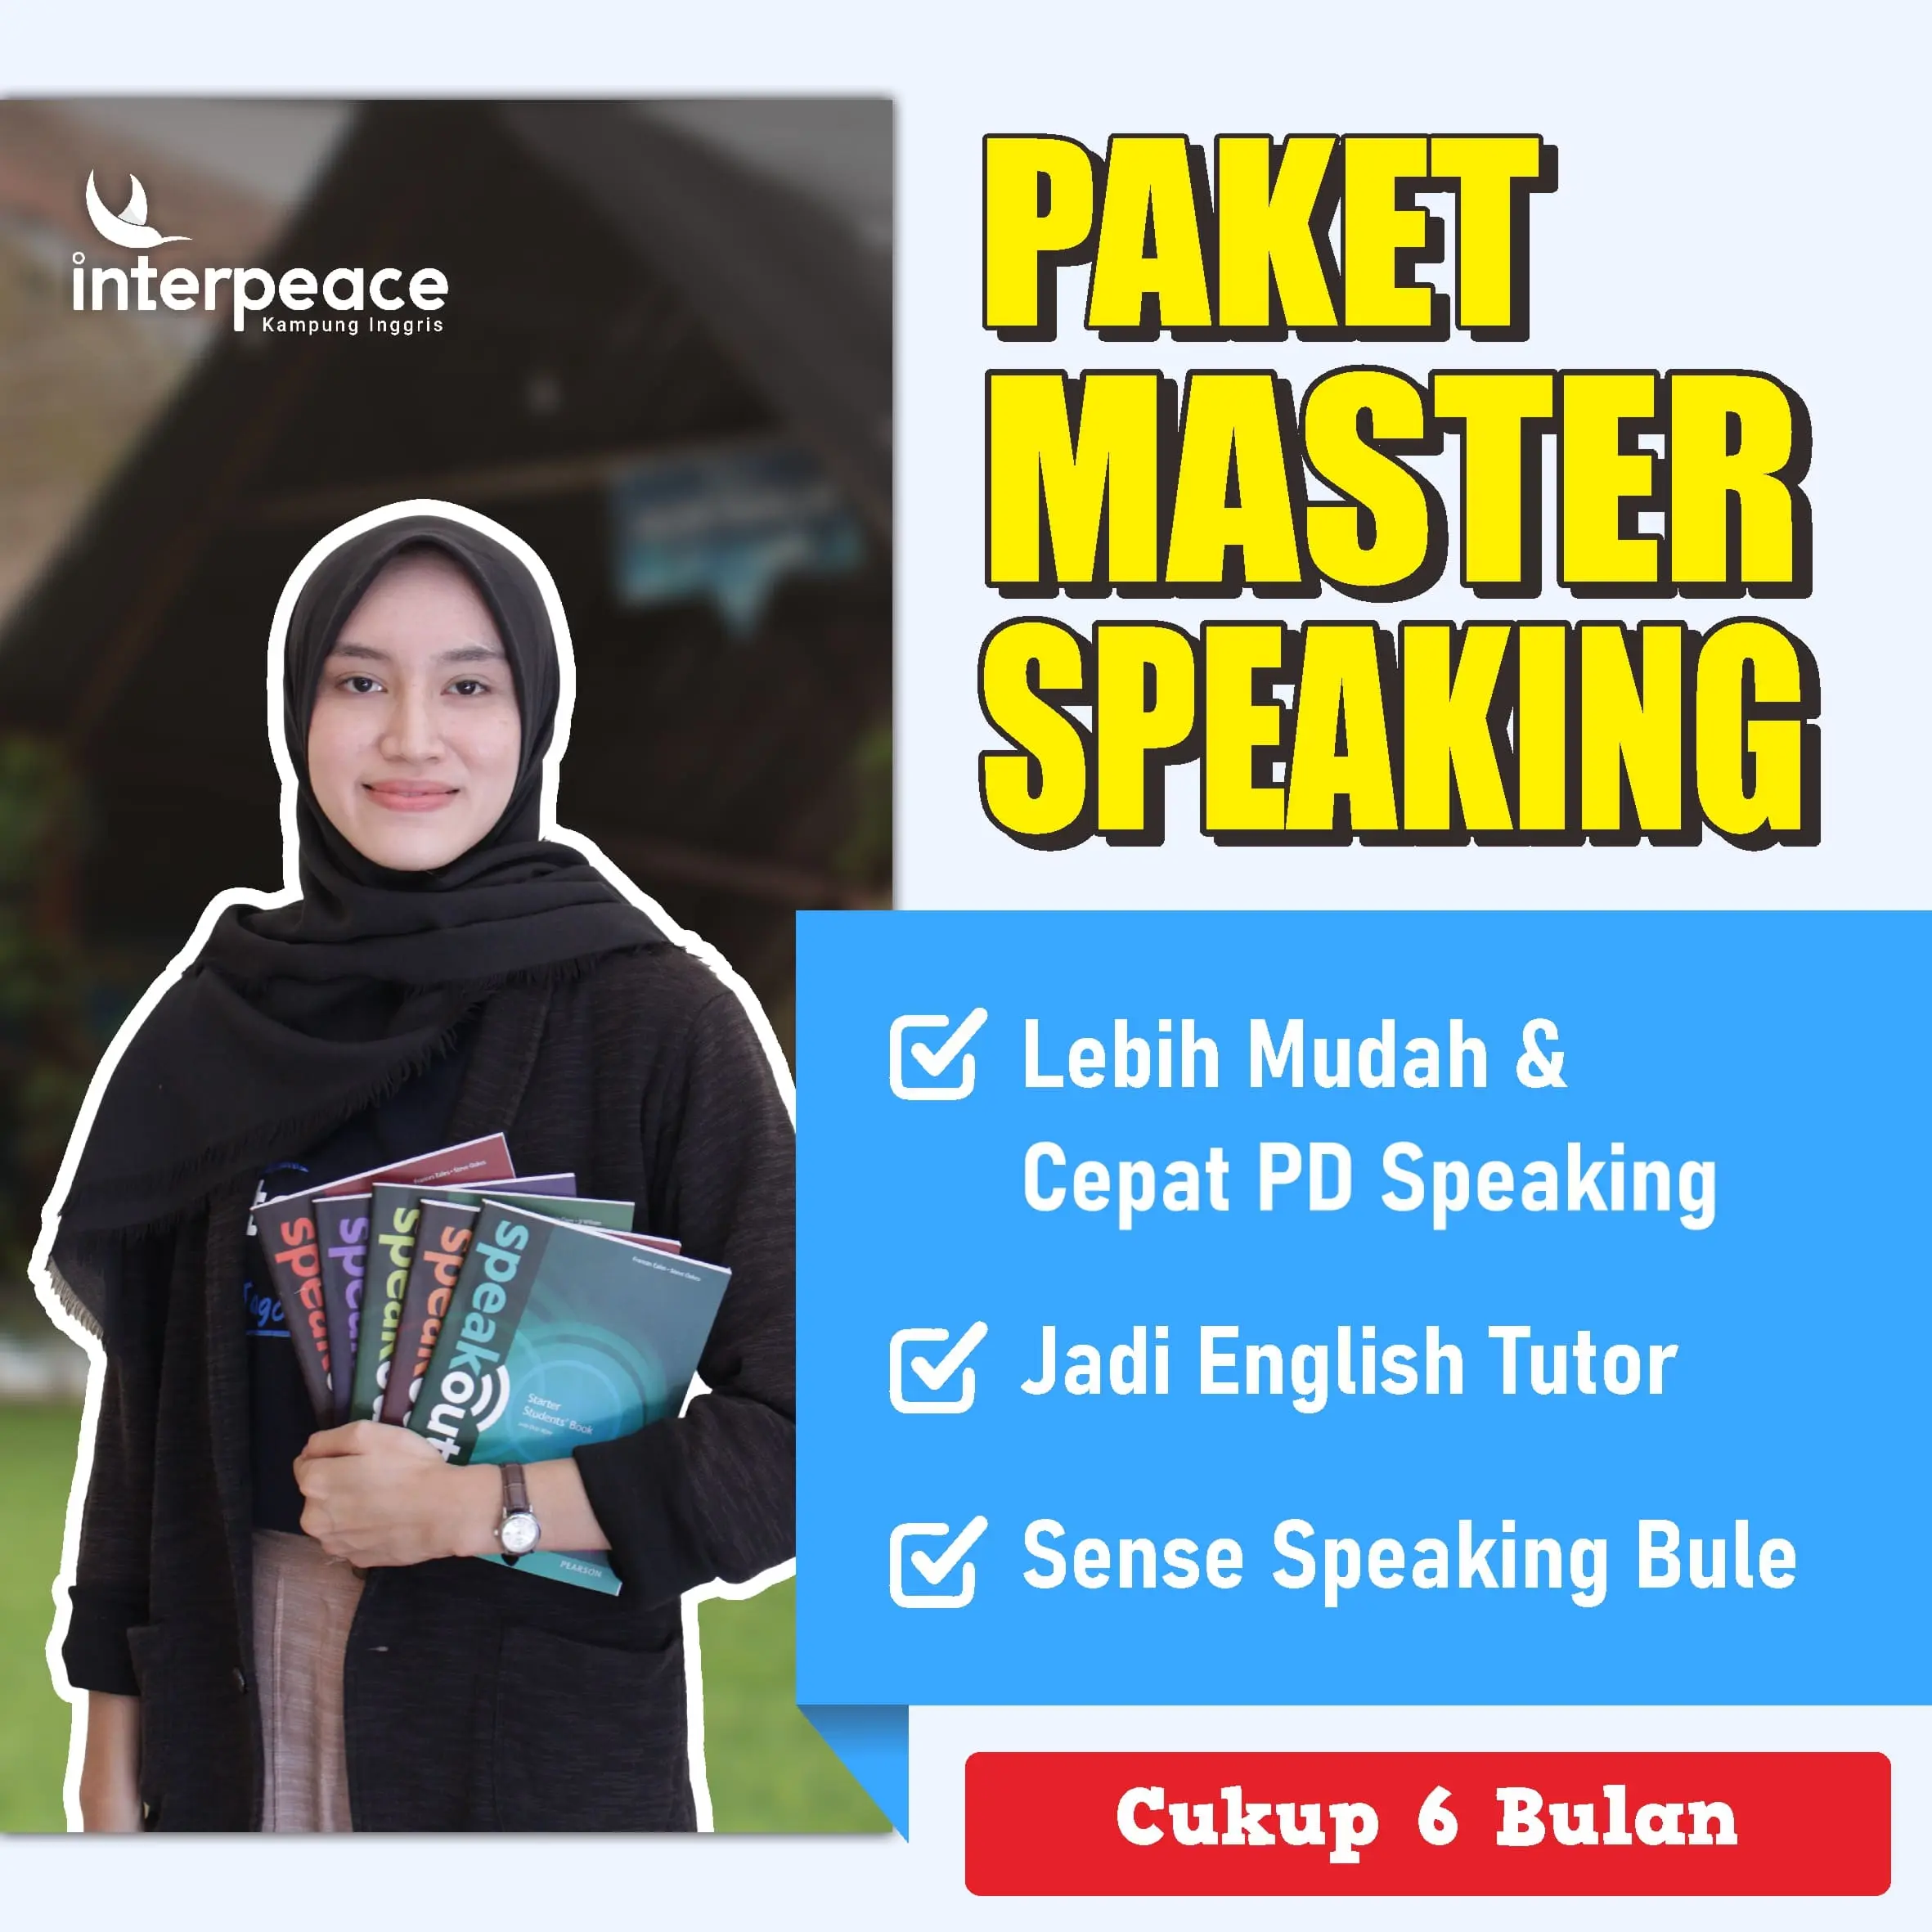 Master Speaking Interpeace Kampung Inggris Pare